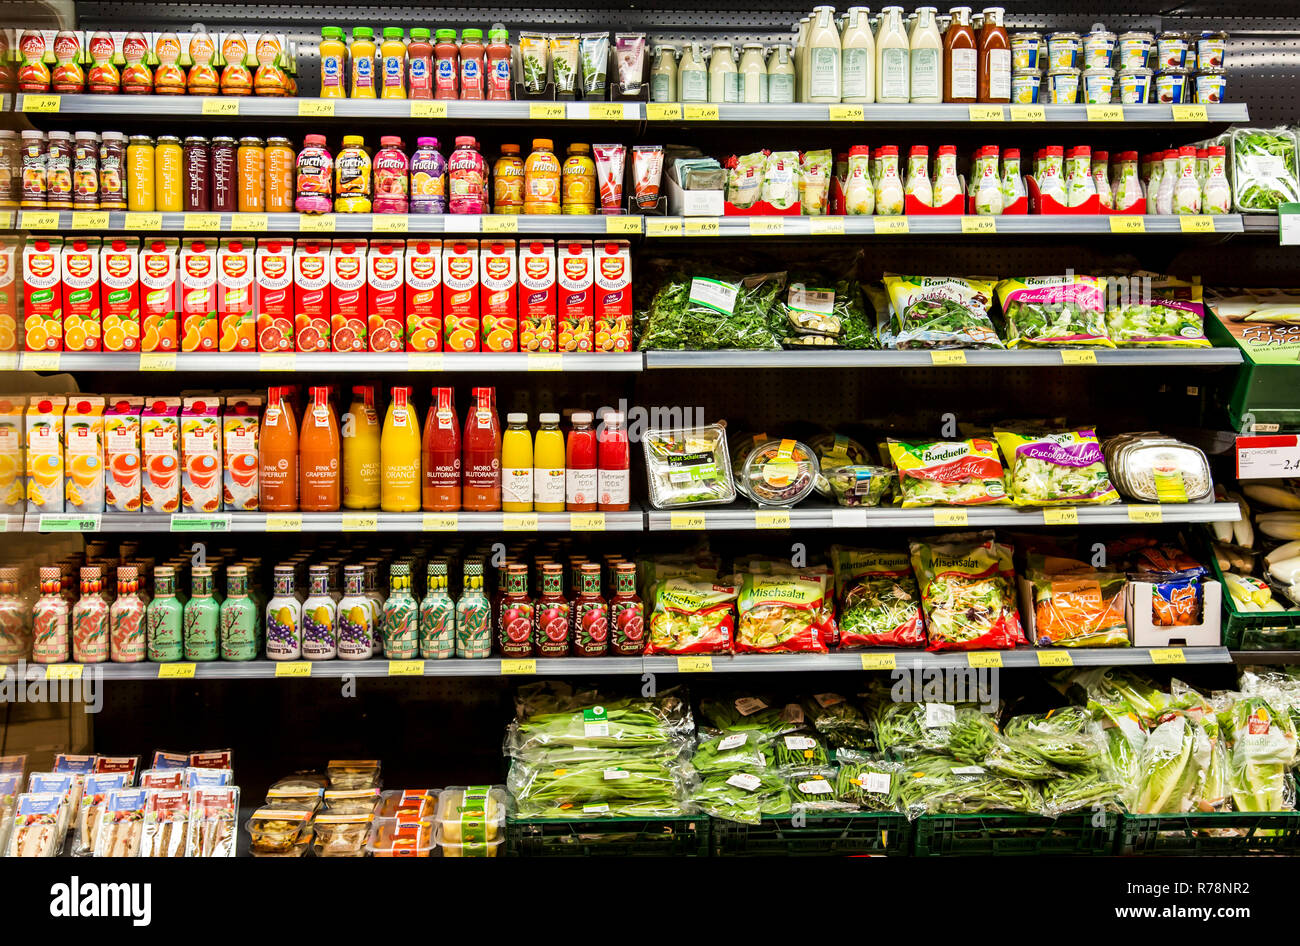 Ripiano refrigerato con vari prodotti vegetali, insalate confezionate, medicazioni, succhi, supermercato, Germania Foto Stock